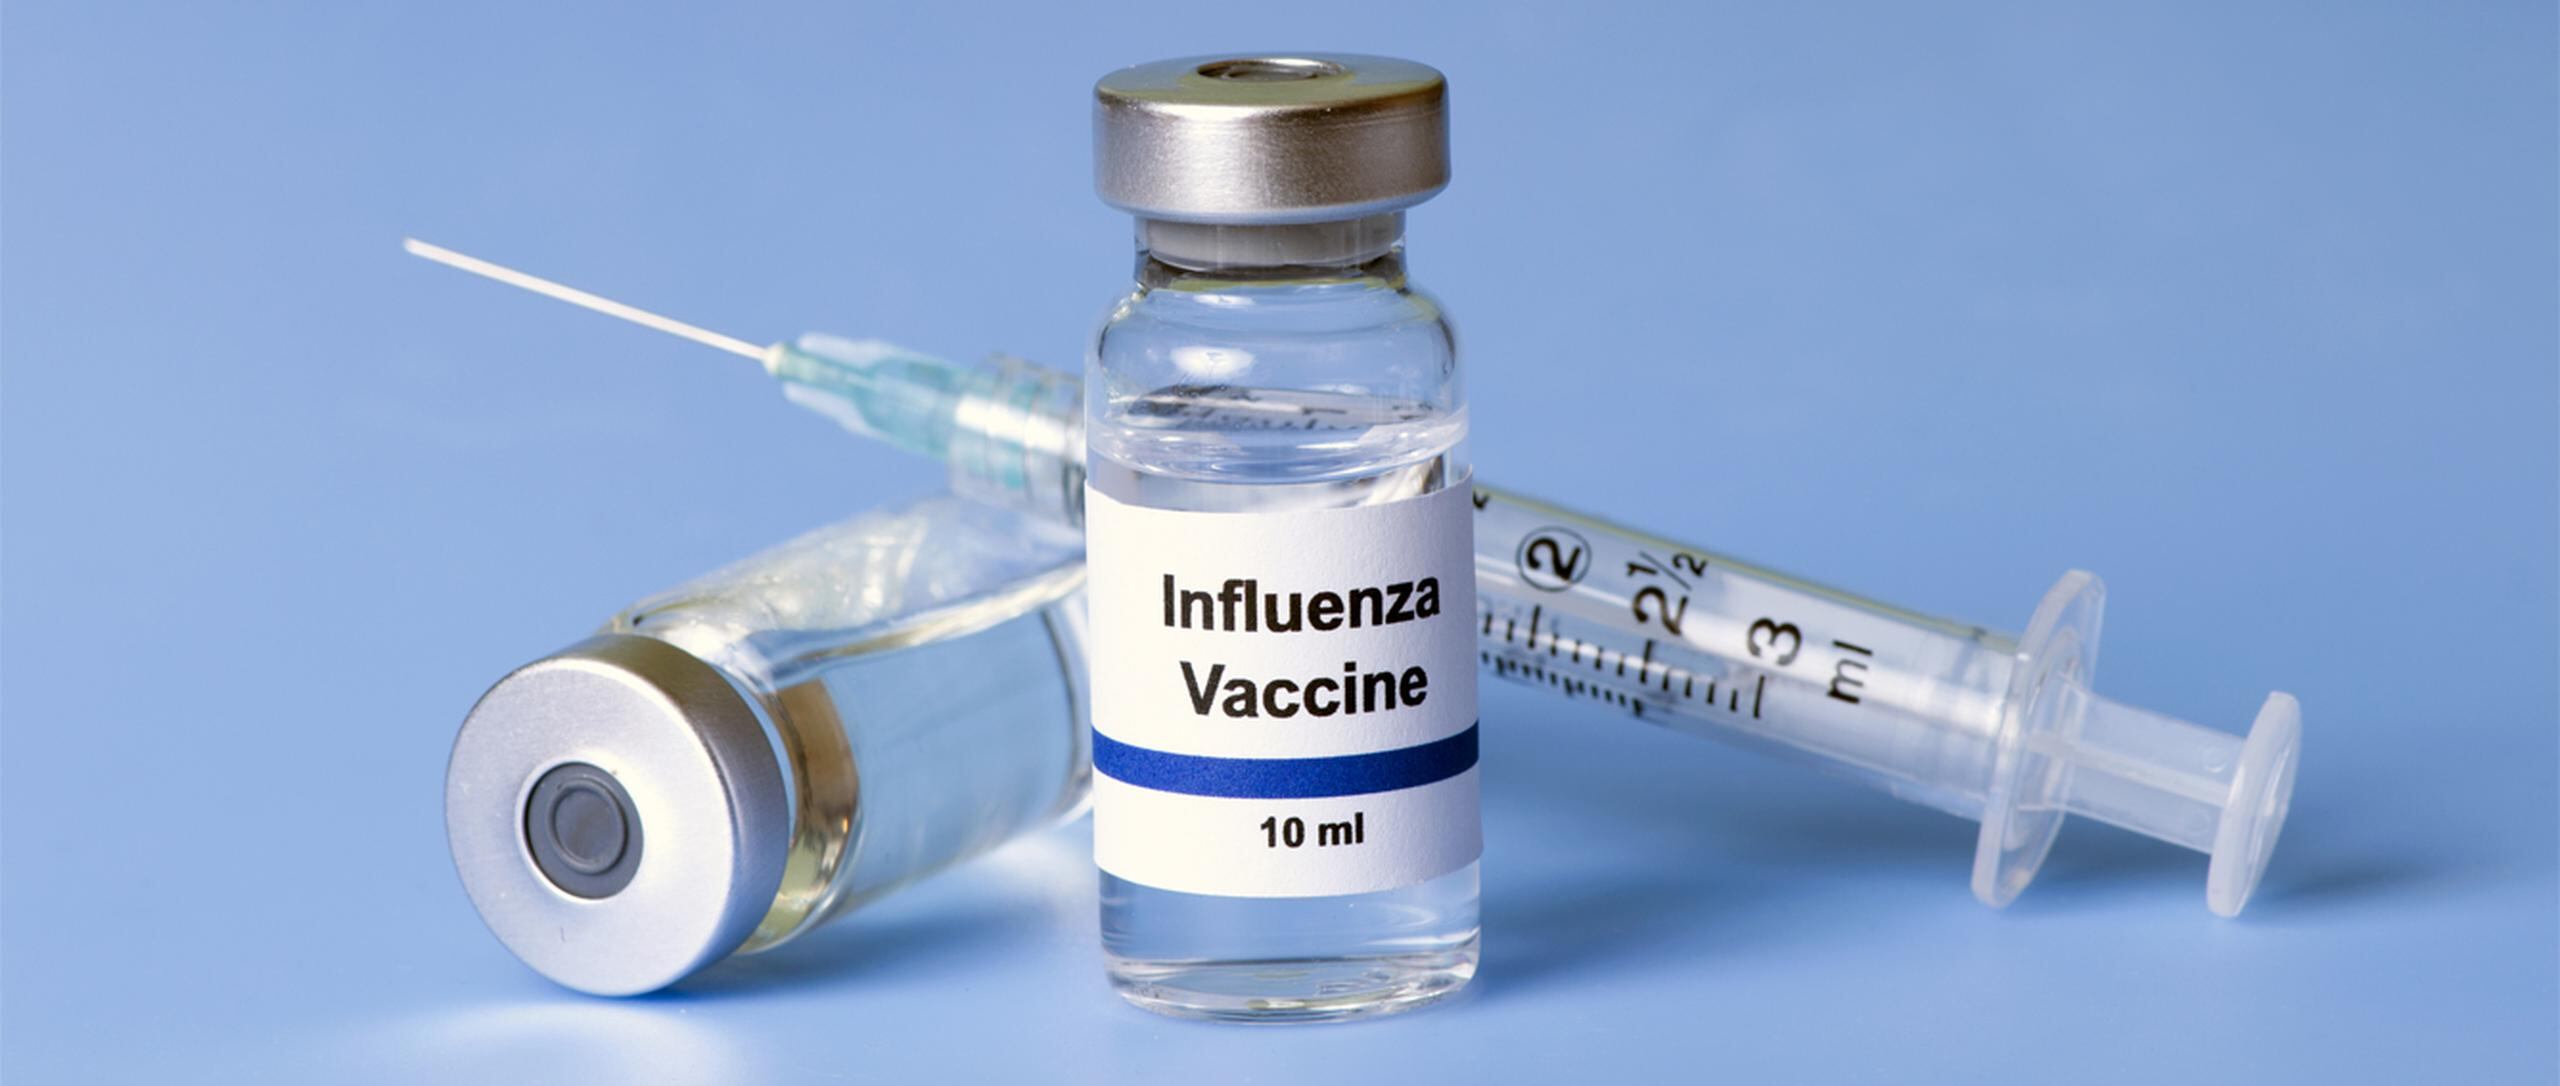 La vacunación ha probado ser la medida más efectiva para evitar contagiarse. (Shutterstock)